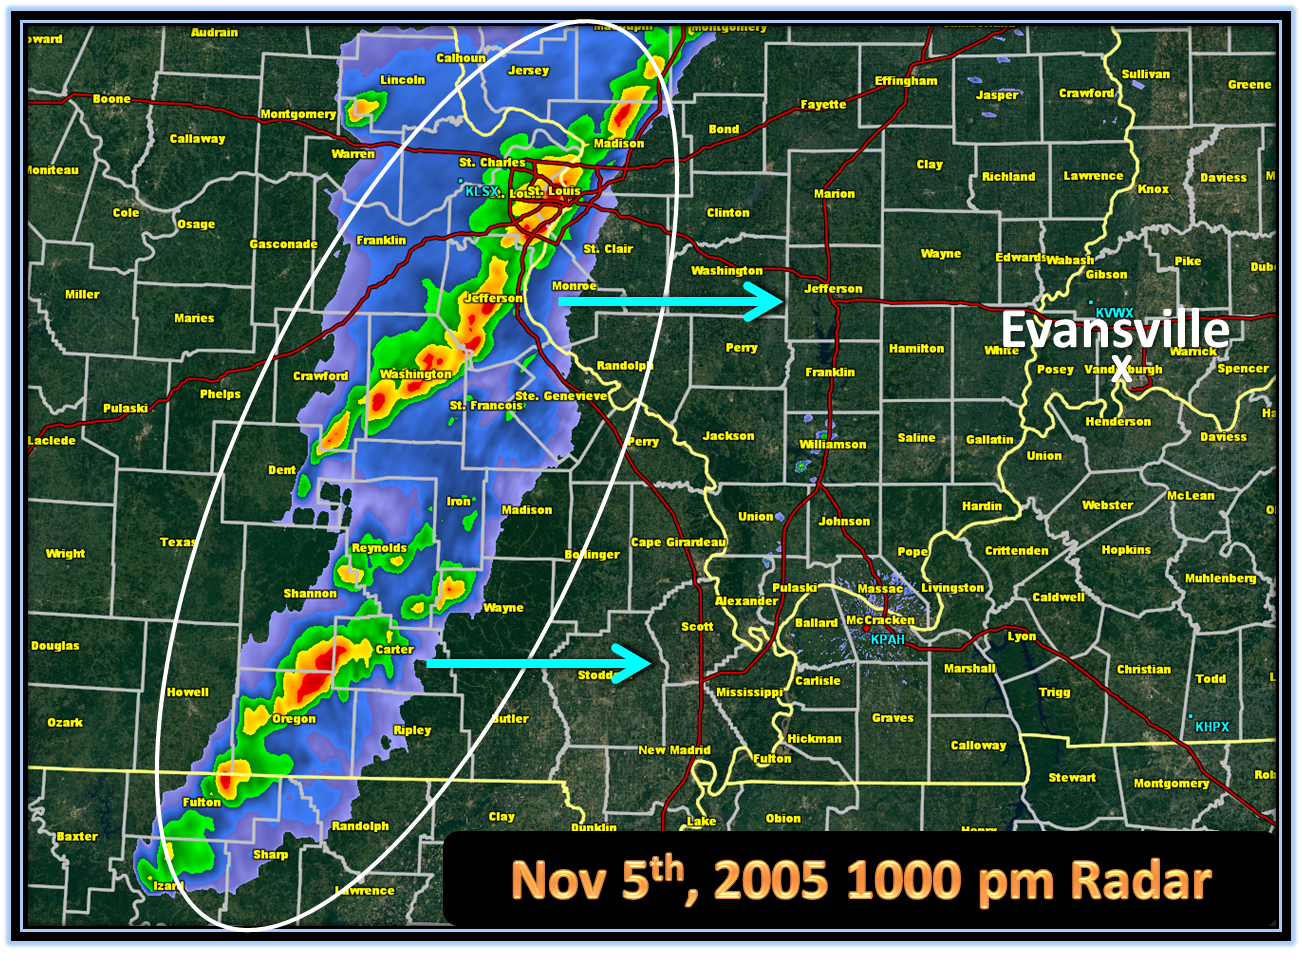 Nov 6th 2005 Evansville Area Tornado1302 x 961